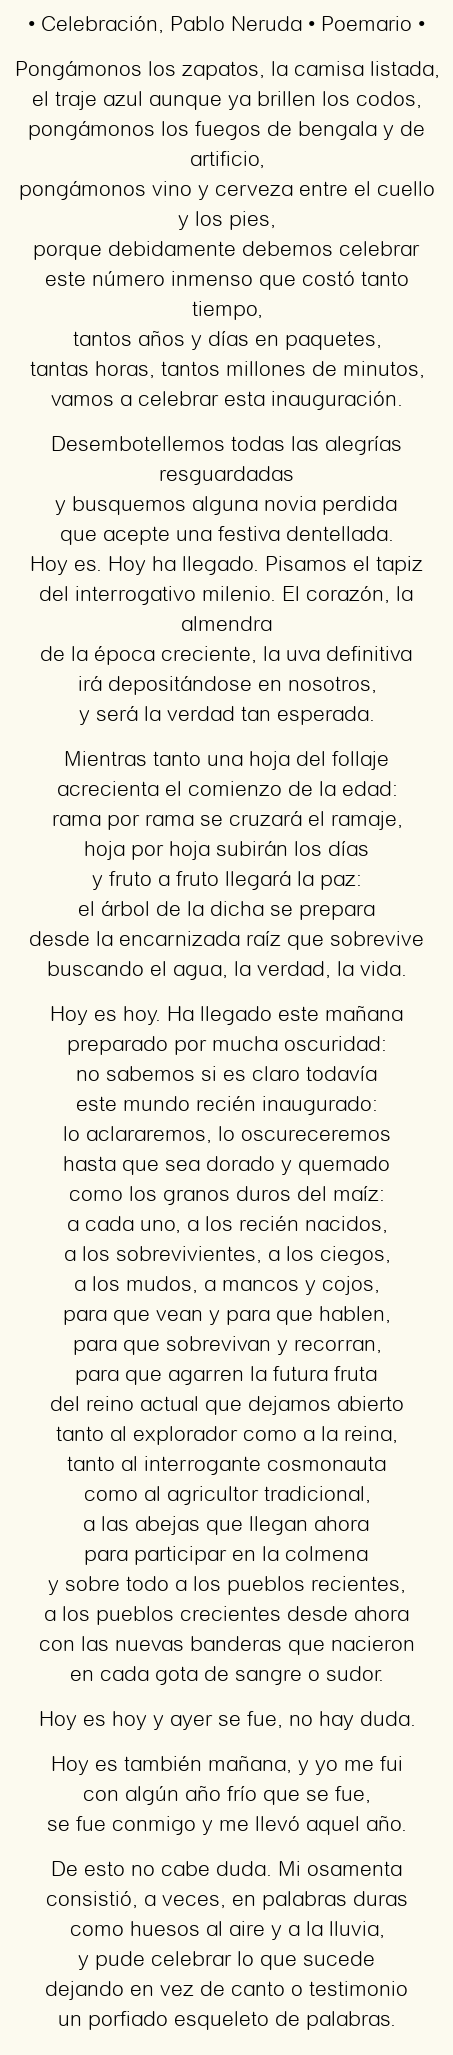 Celebración, por Pablo Neruda